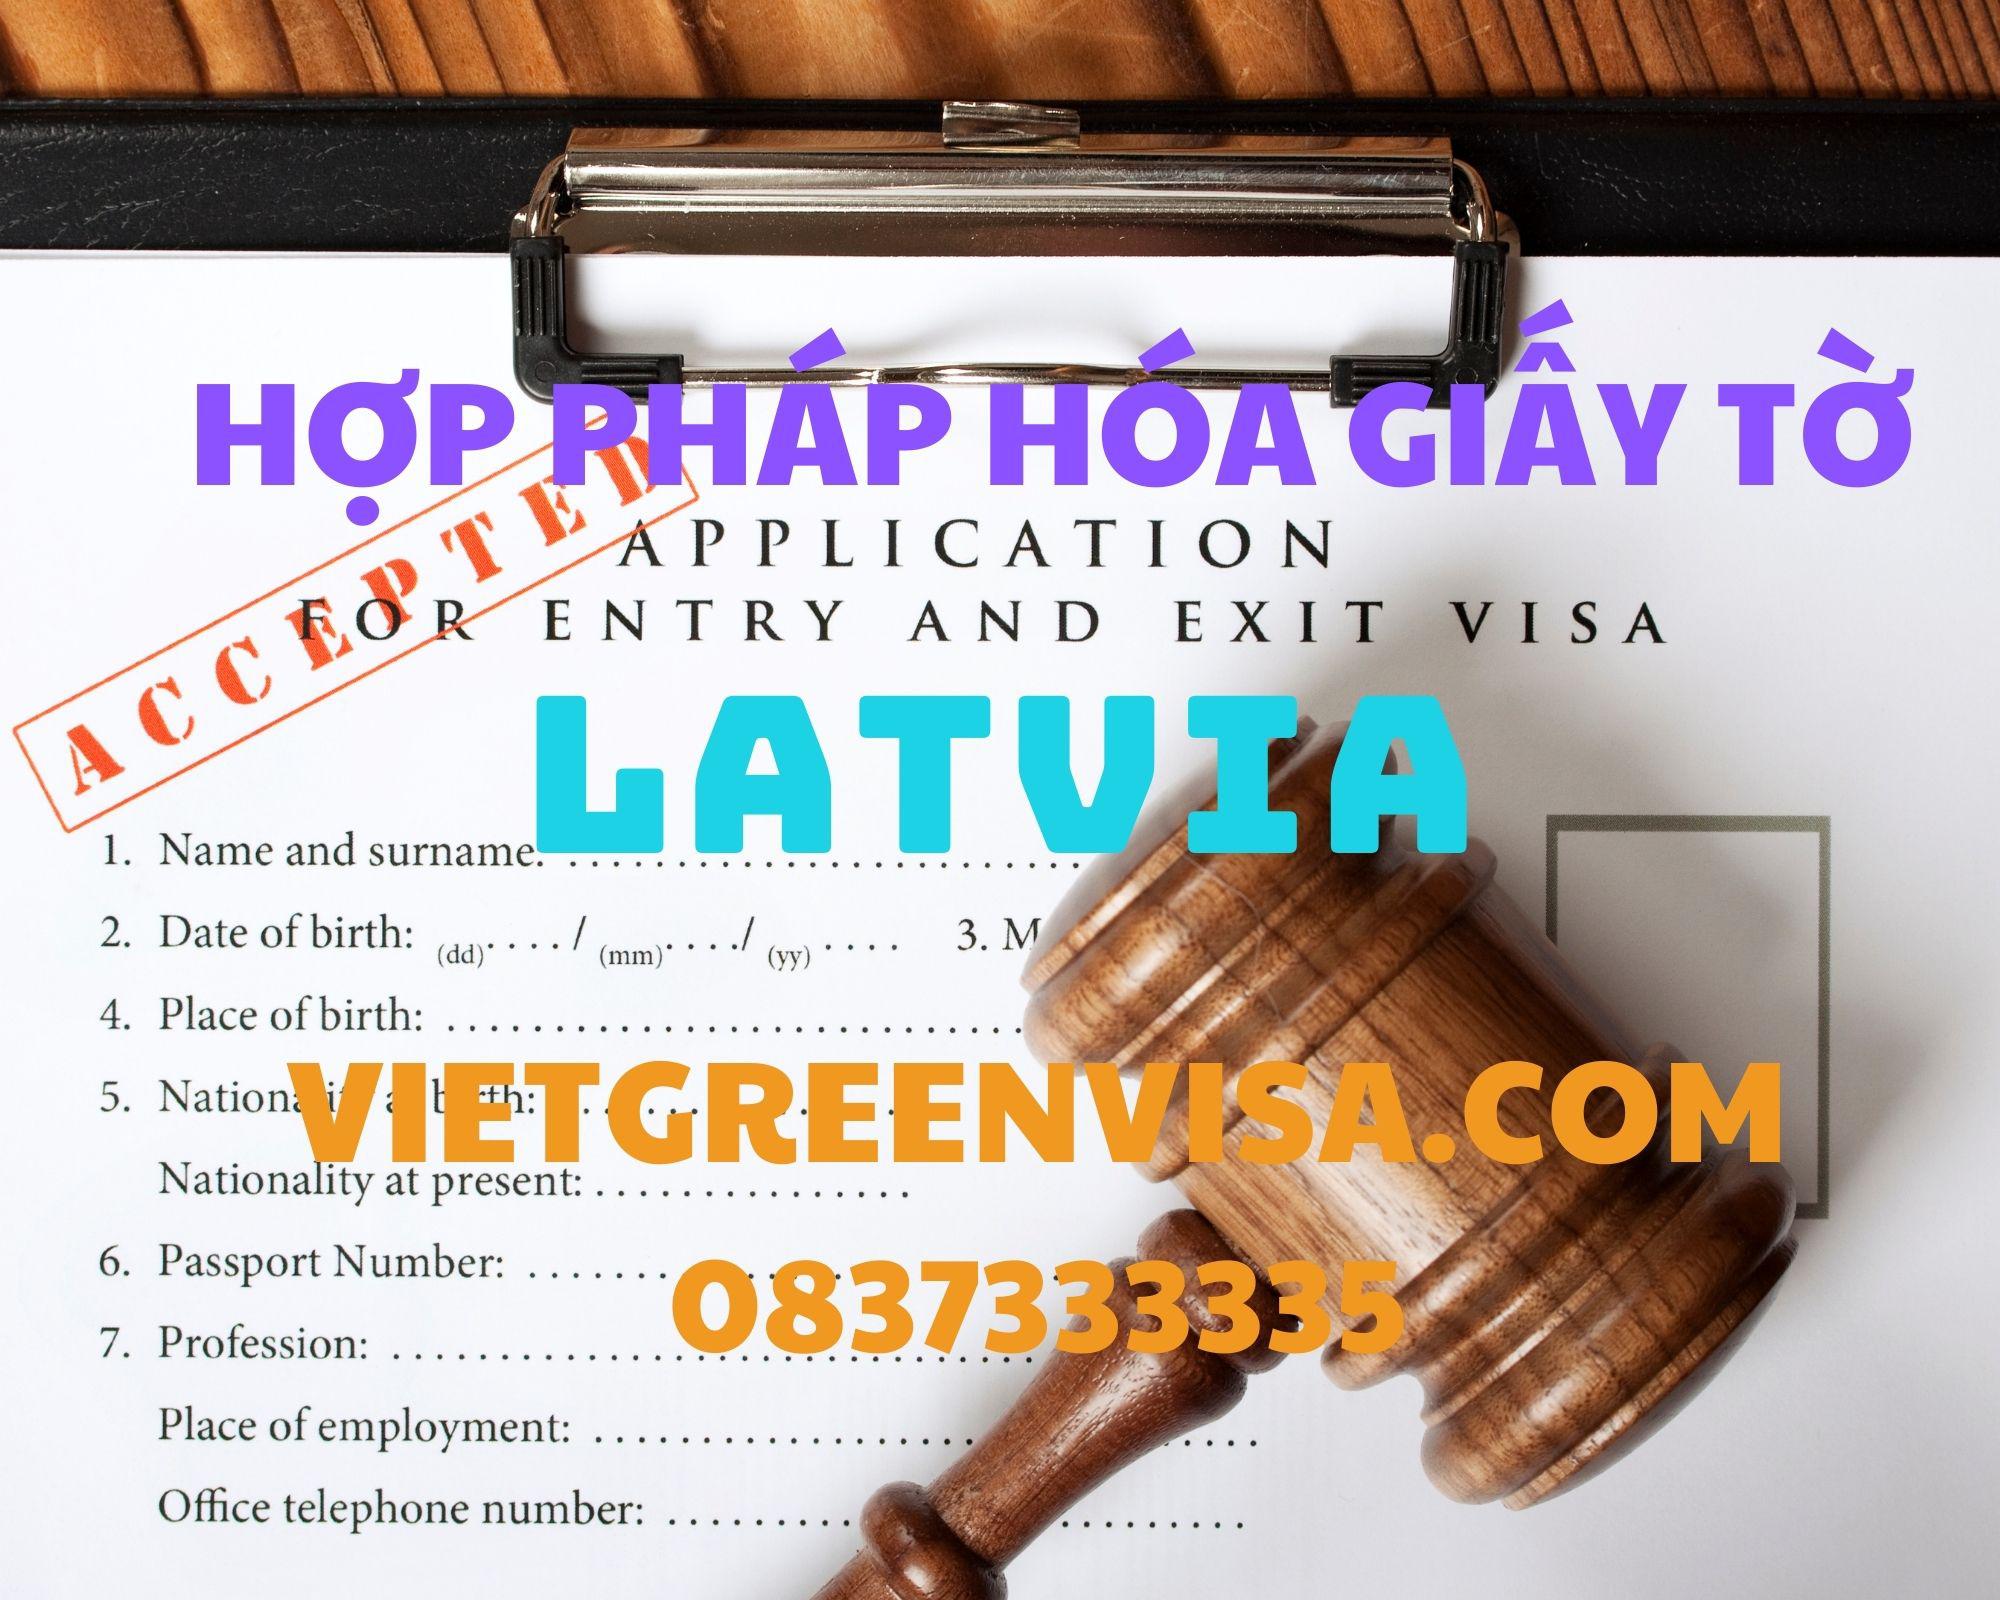  Dịch vụ hợp pháp hóa giấy tờ tại Latvia nhanh chóng